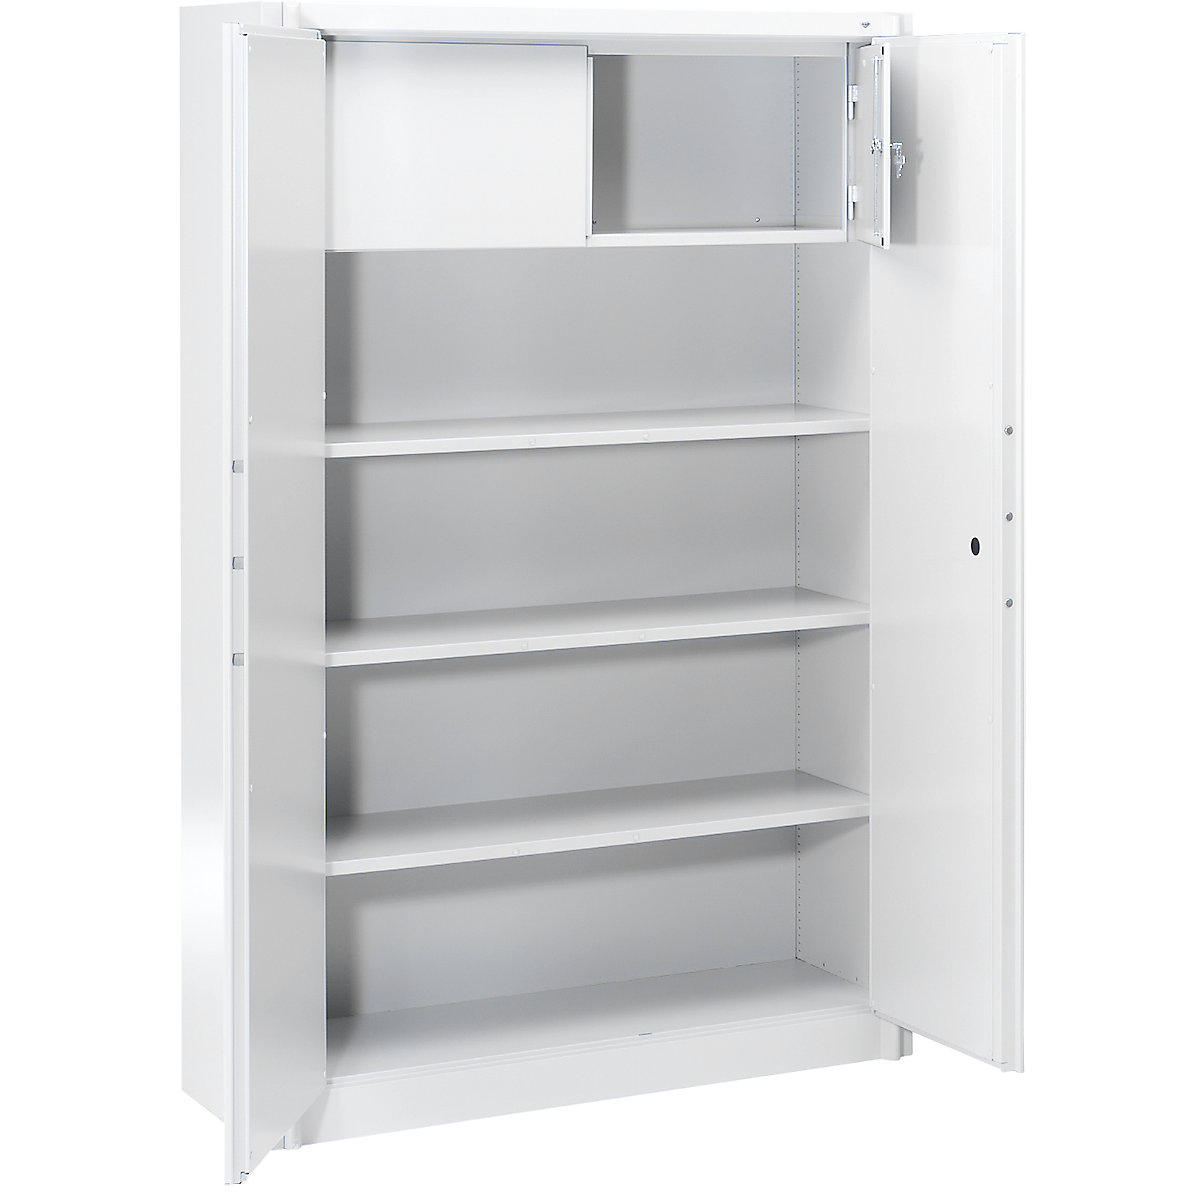 Steel cupboard, fireproof – C+P, DIN 4102 compliant, HxWxD 1950 x 1200 x 500 mm, light grey, with locker-11